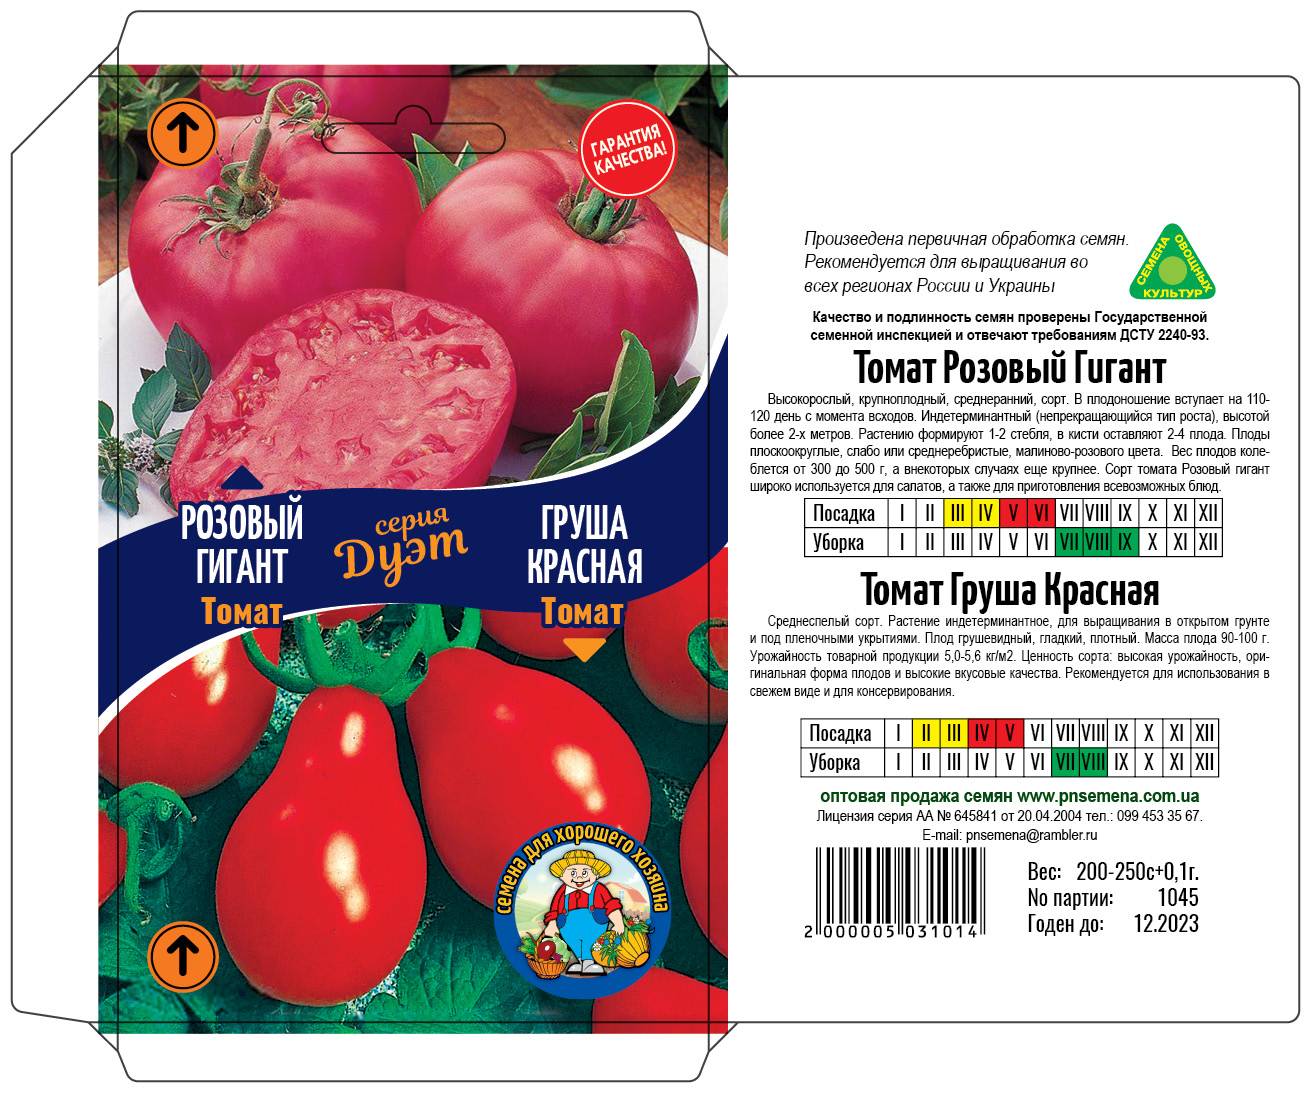 Пошаговое руководство по уходу за томатами в открытом грунте